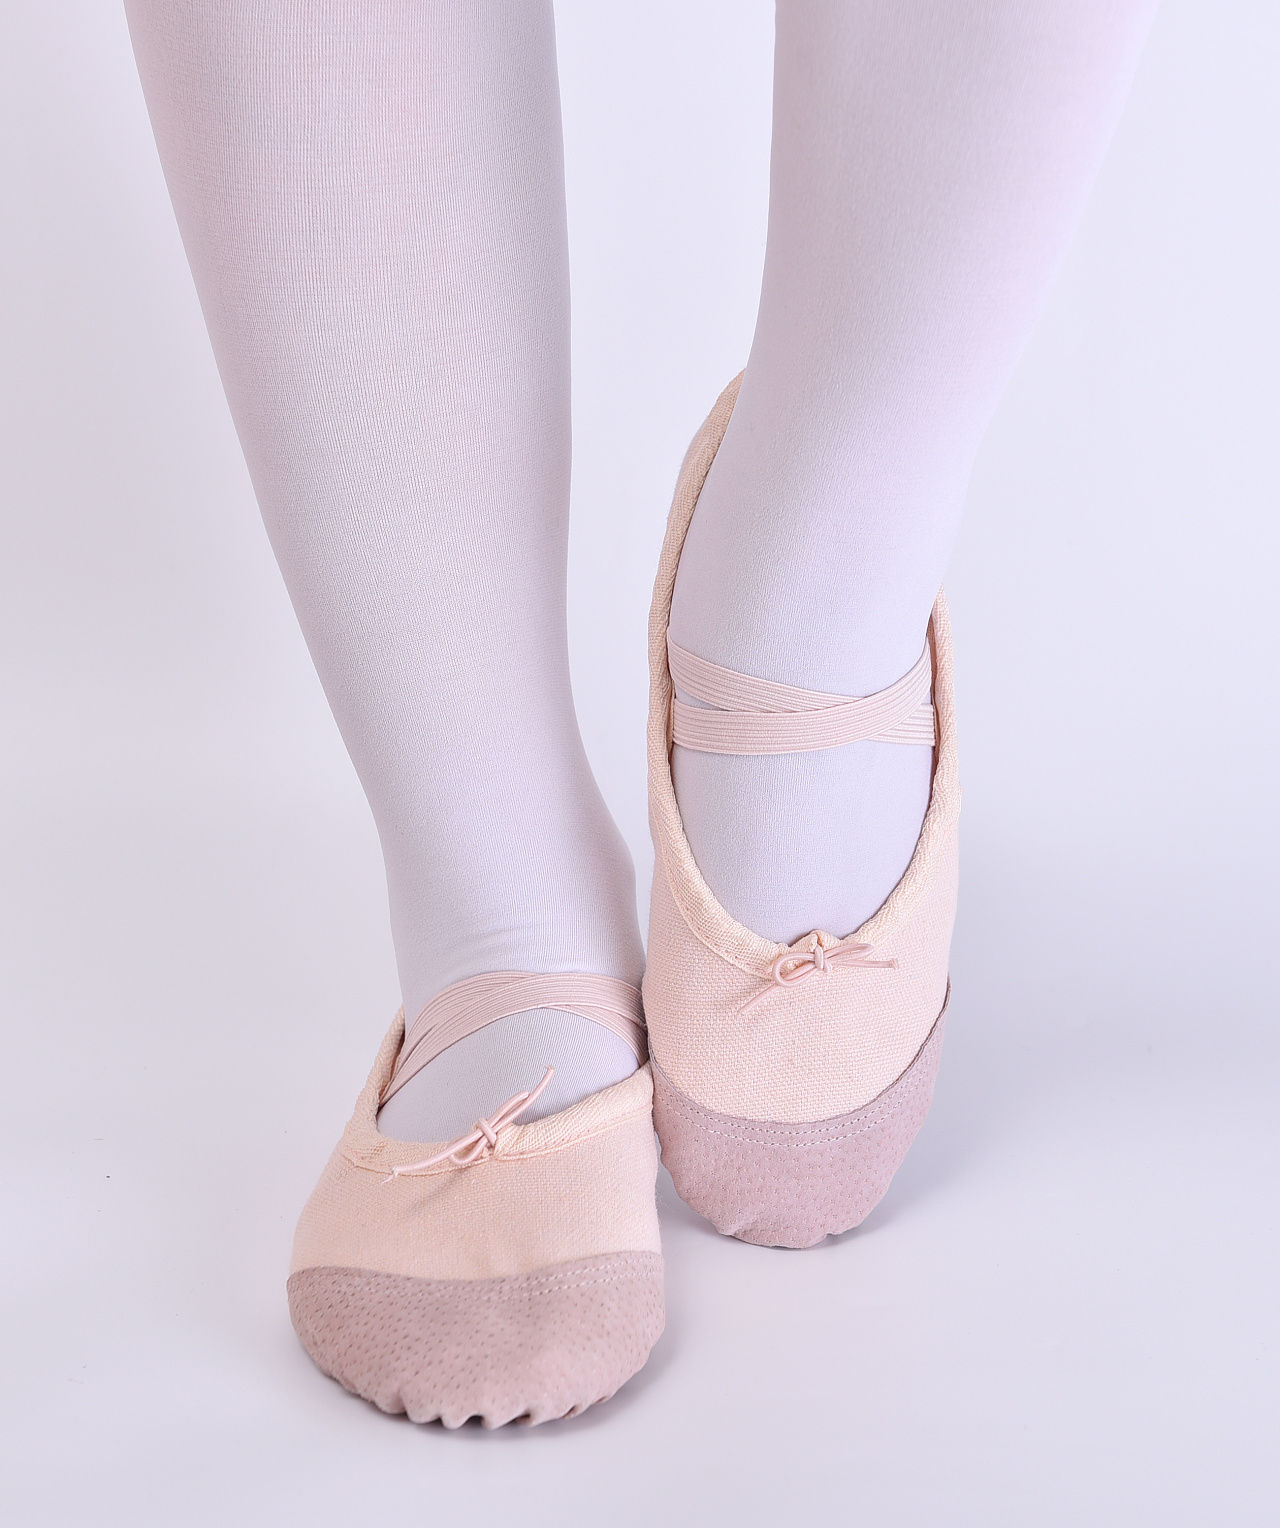 芭蕾舞鞋走红 原来每个女孩都有个dancing梦|芭蕾舞鞋|绑带|平底鞋_新浪时尚_新浪网